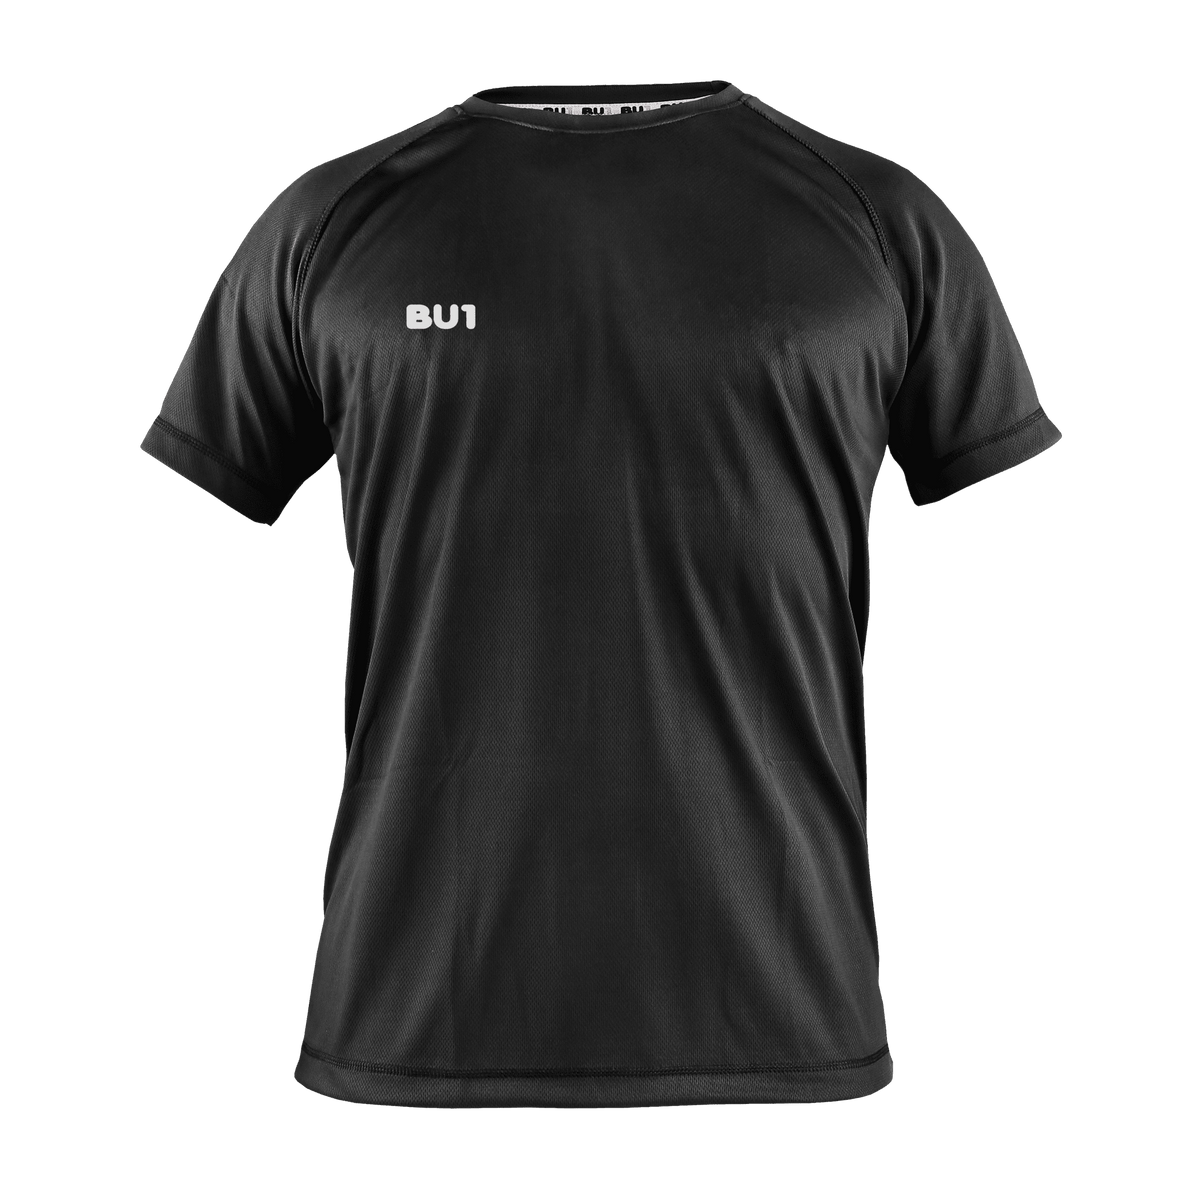 BU1 training shirt black